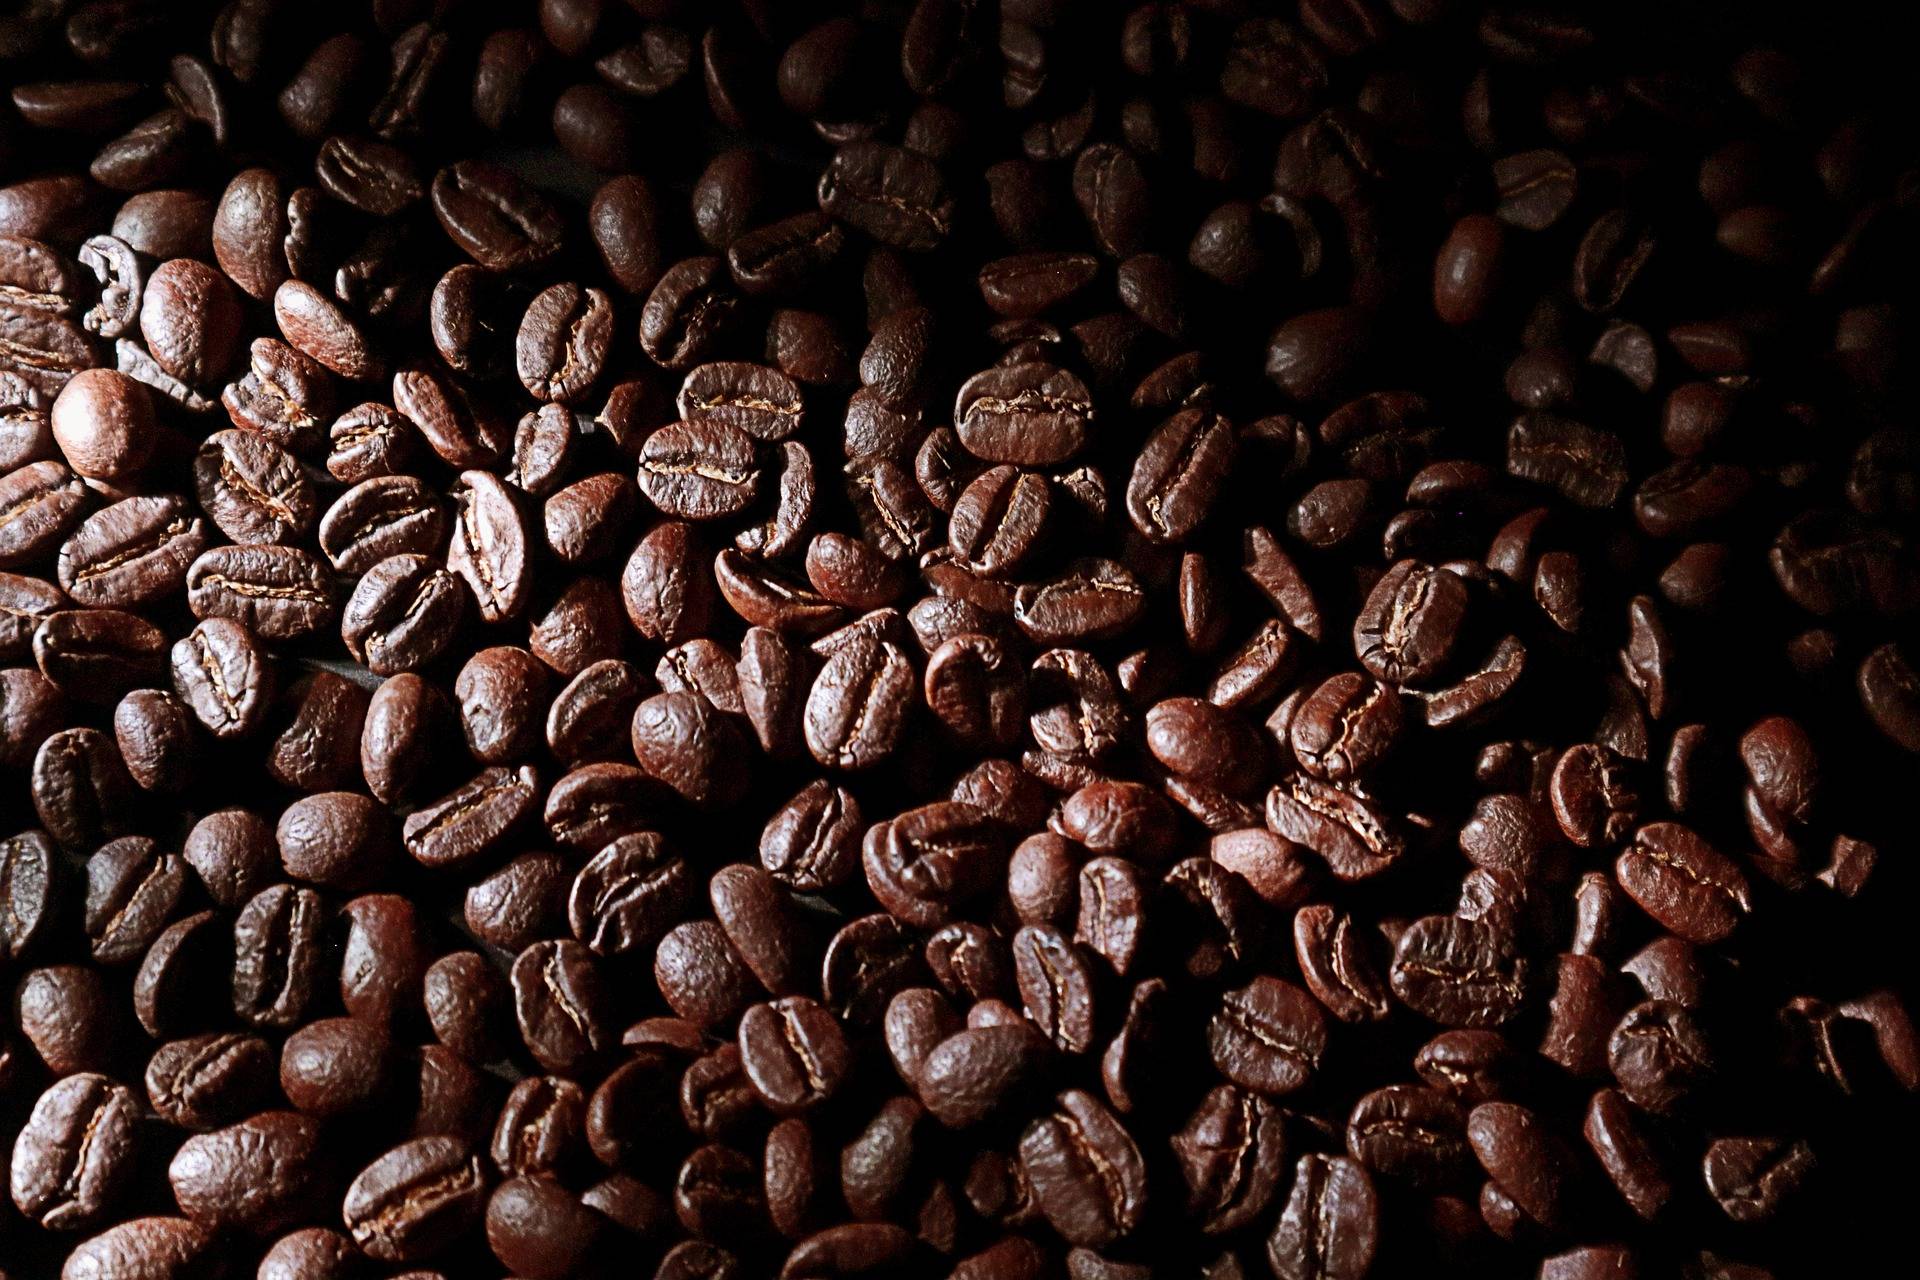 Гифки кофе - более 100 анимированных gif изображений чашек кофе